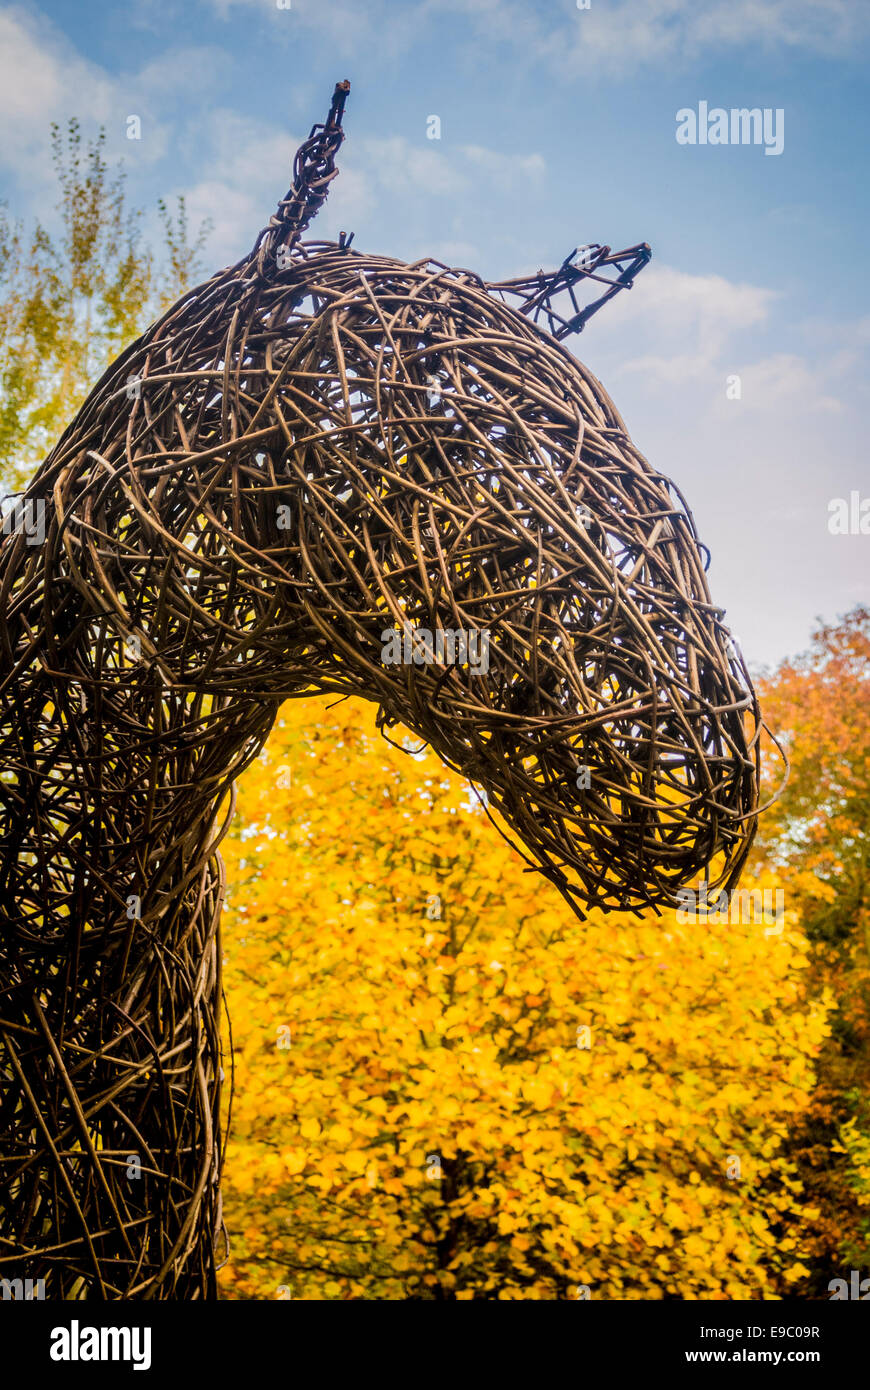 Willow-Skulptur eines Pferdekopfes mit herbstlichen Bäume im Hintergrund. Stockfoto